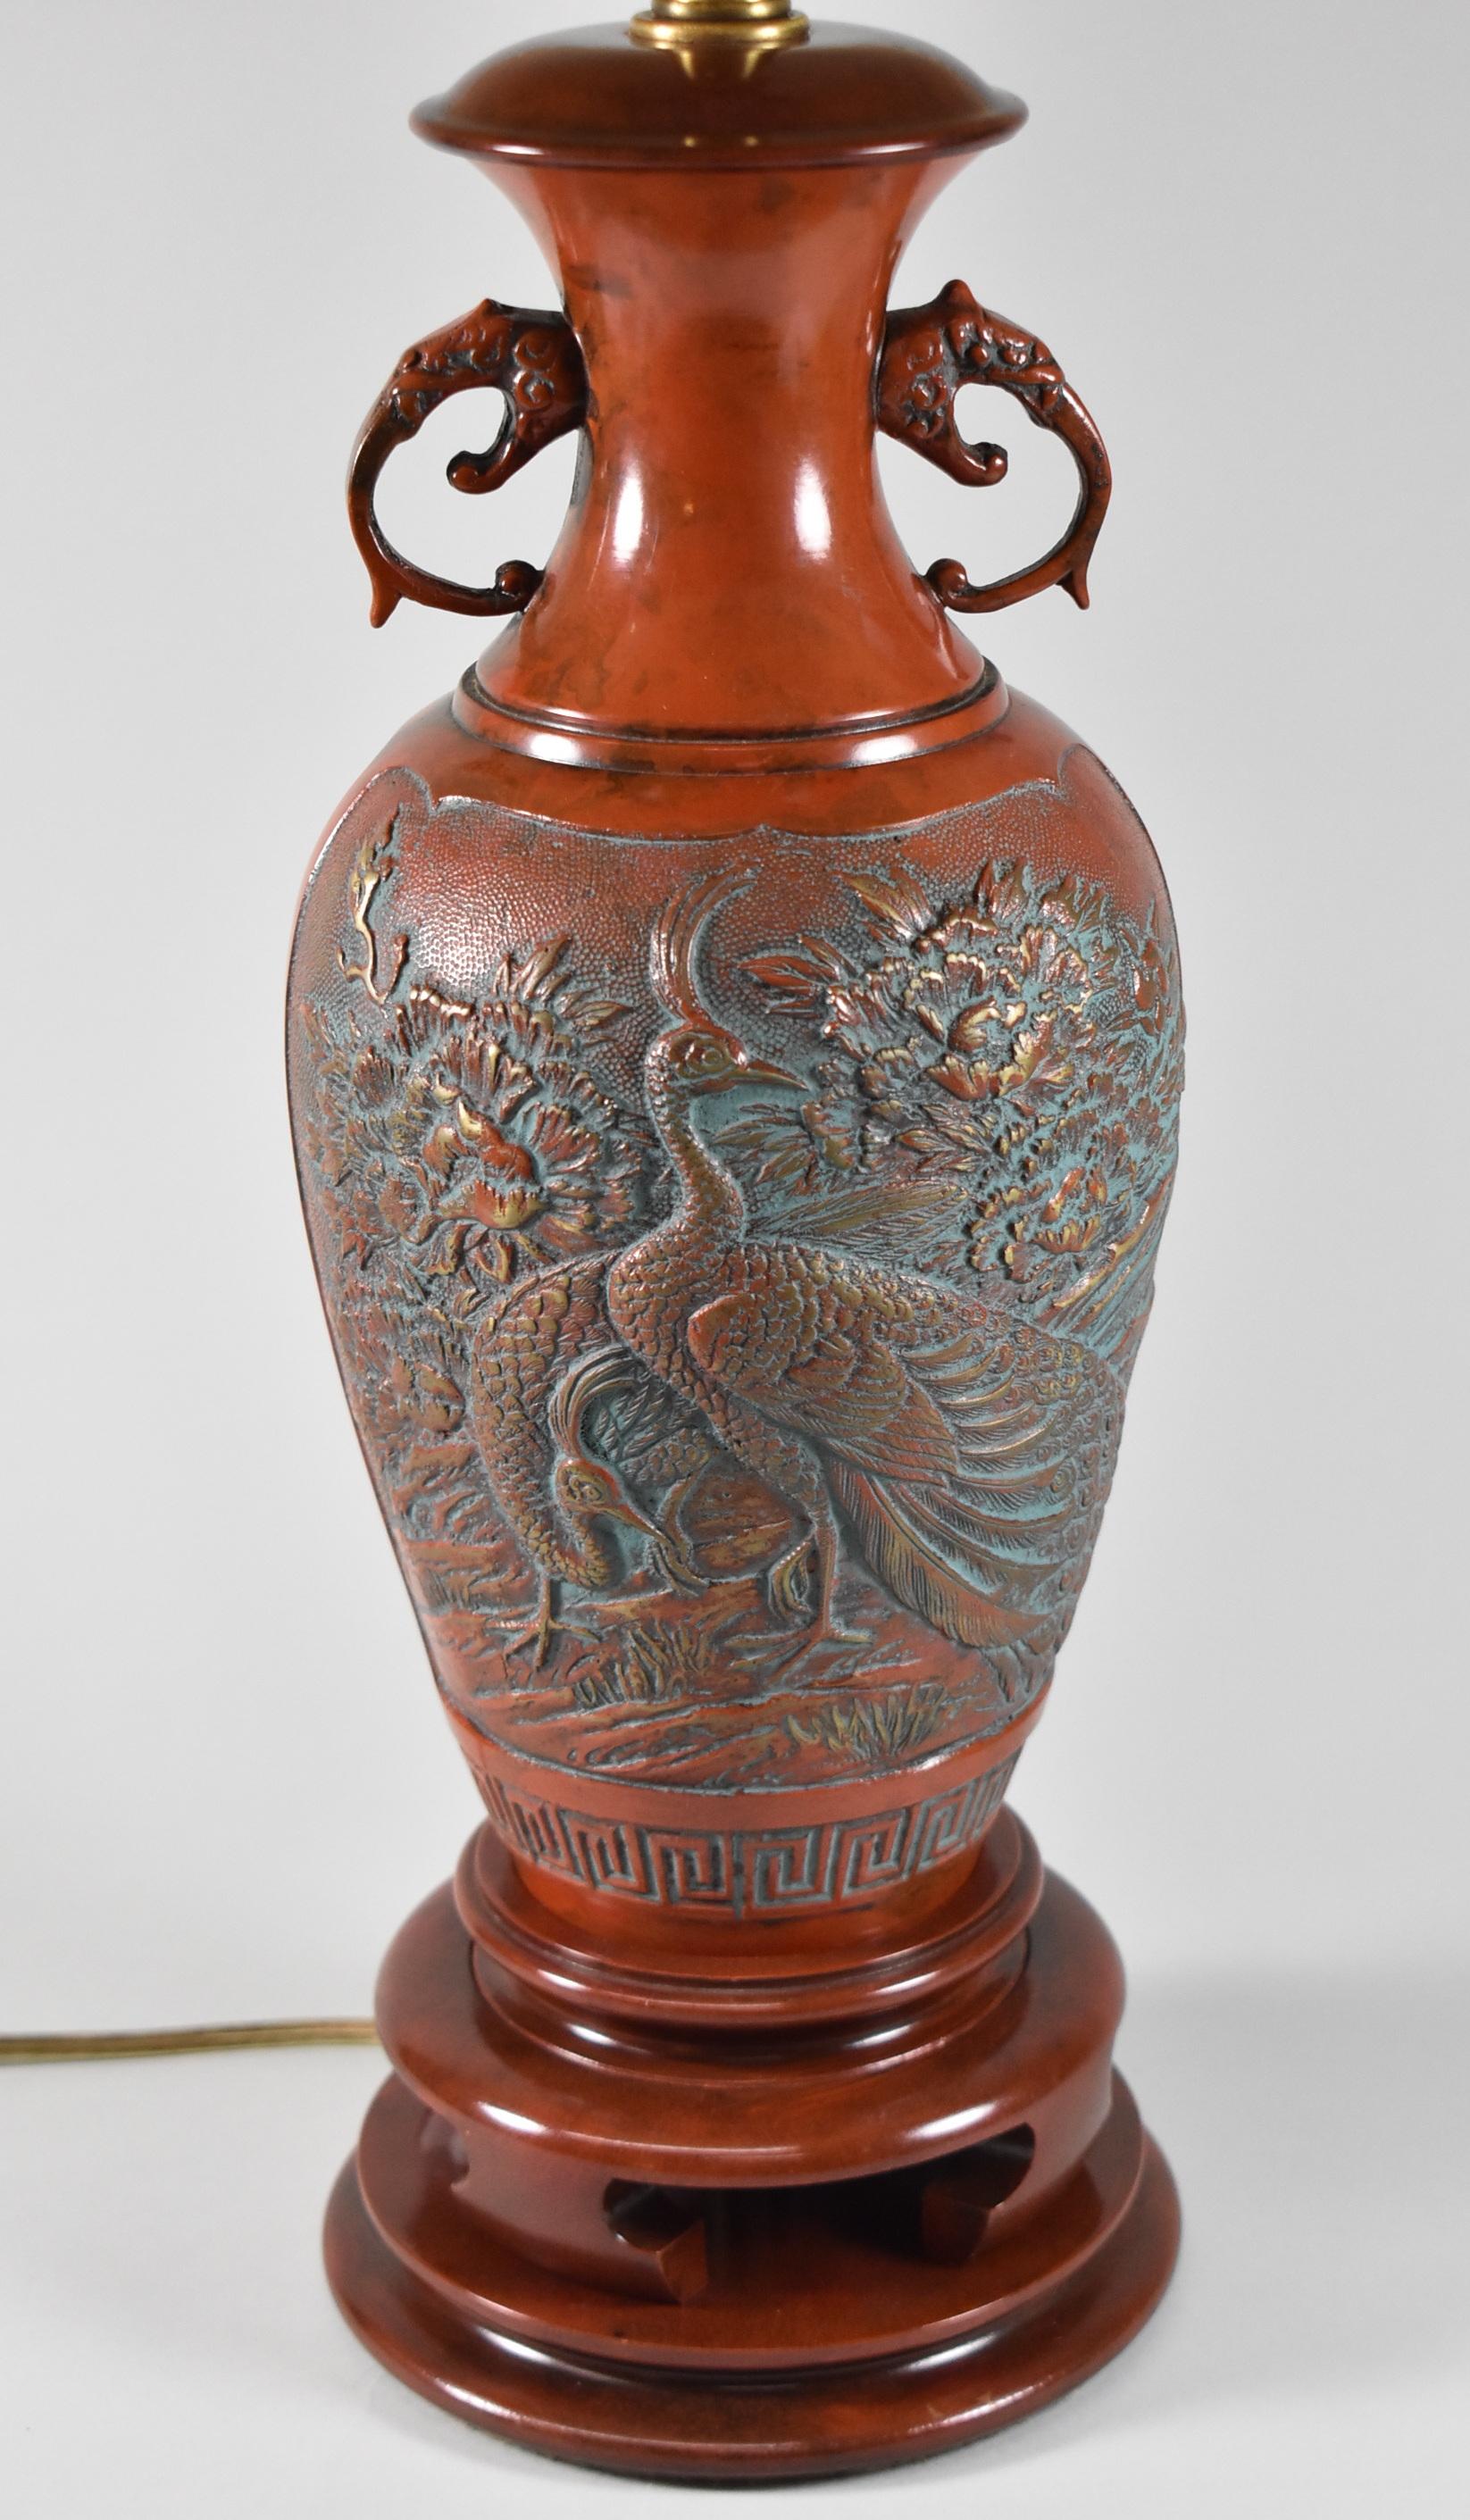 Lampe Marbro avec des motifs asiatiques sculptés de paons et de feuillages. Finition originale. Bon câblage. L'abat-jour n'est pas inclus.